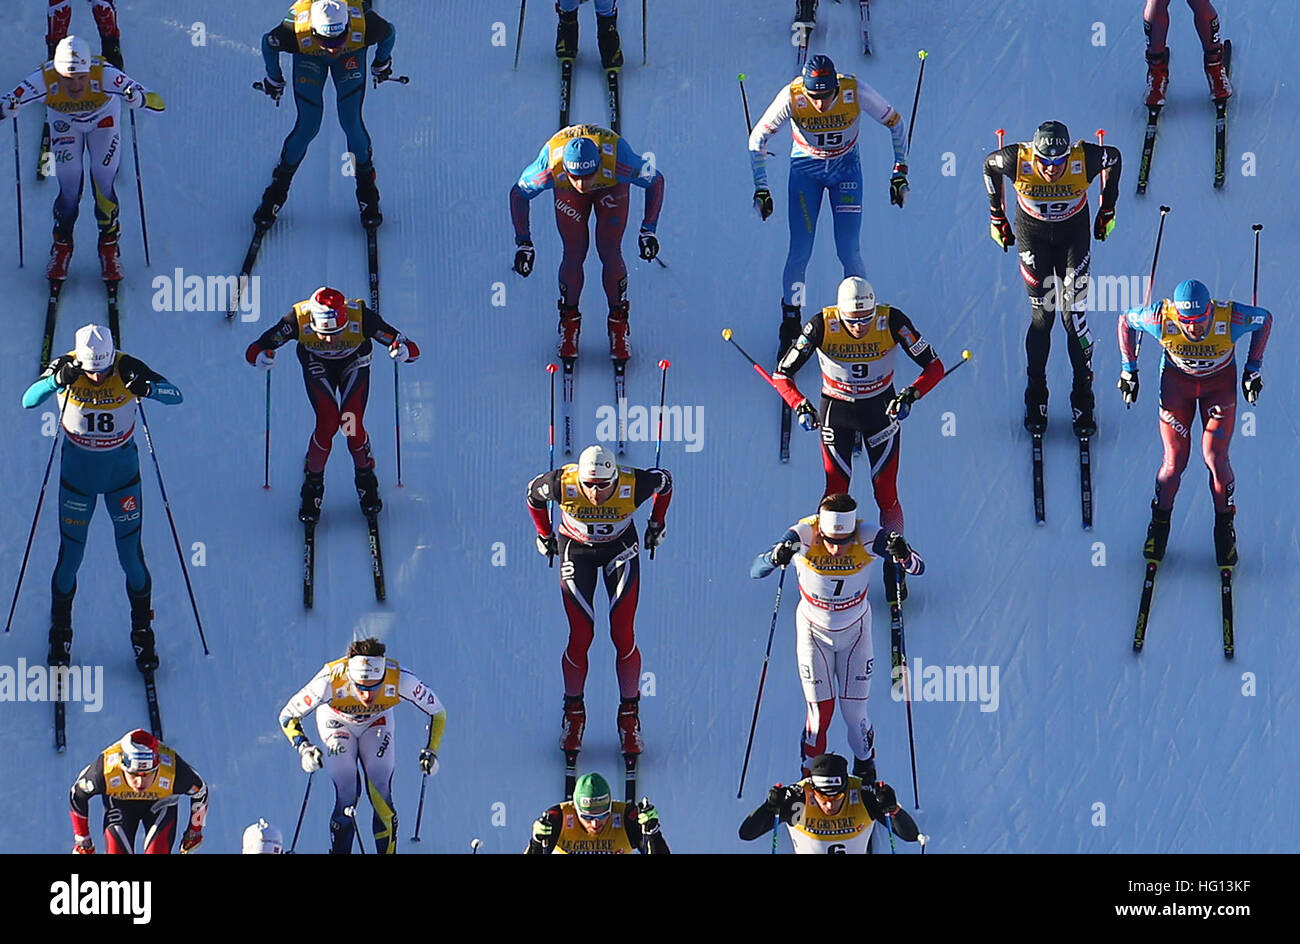 Oberstdorf, Germania. 03 gen 2017. I fondisti in azione durante la FSI Tour de Ski la concorrenza a Oberstdorf in Germania, 03 gennaio 2017. Il concorso si svolge dal 03 al 04 gennaio 2017. Foto: Karl-Josef Hildenbrand/dpa/Alamy Live News Foto Stock